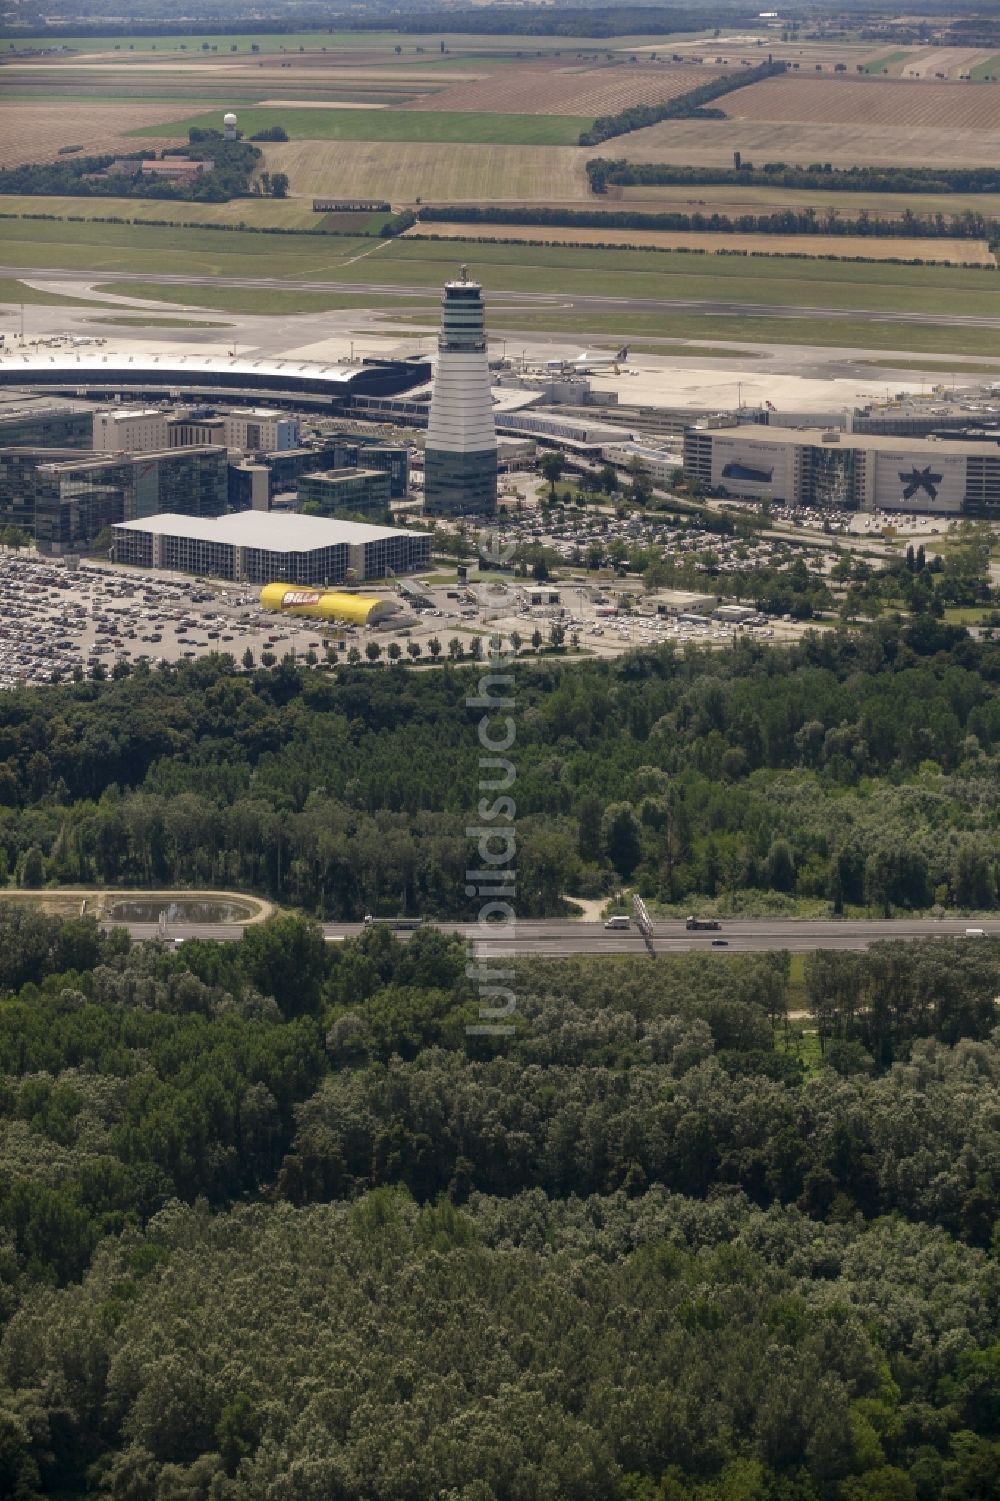 Luftbild Schwechat - Flughafen Tower und Gelände des Flughafen Wien-Schwechat (Vienna International Airport) in Schwechat in Niederösterreich, Österreich